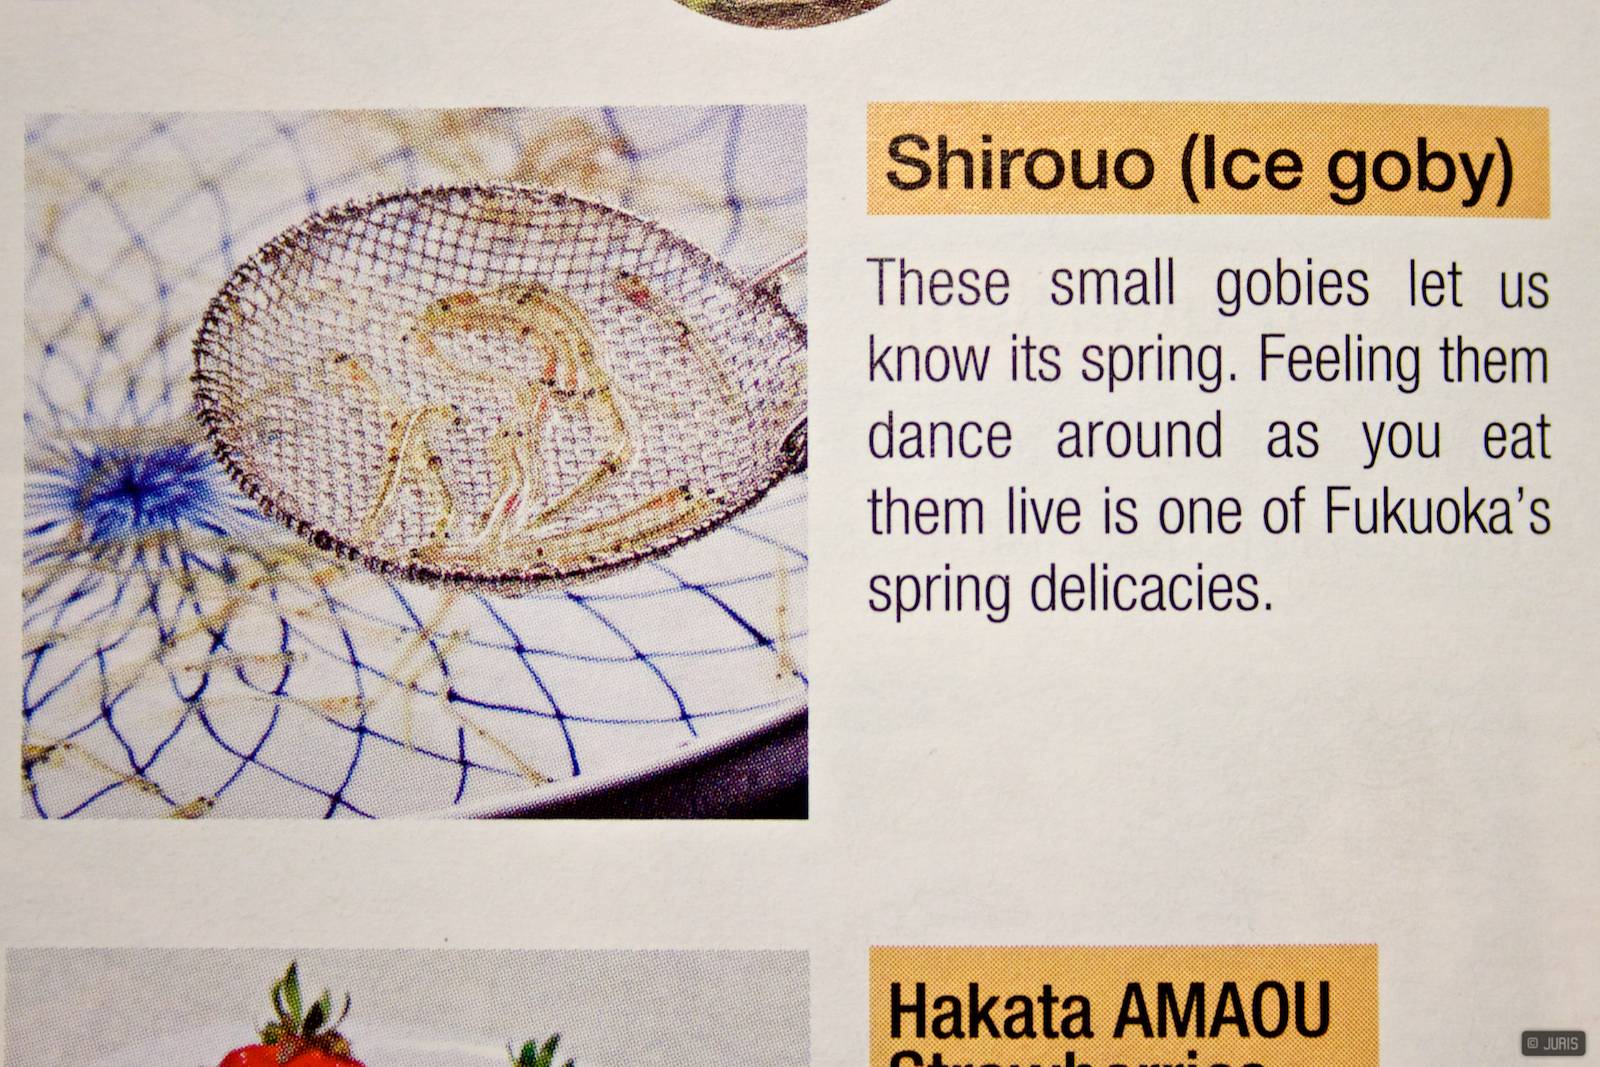 Reklāmas buklets par vietējām delikatesēm Fukuokā. Bijām vasarā, nebija izdevības noskaidrot sajūtu, ka zivis lēkā pa mēli